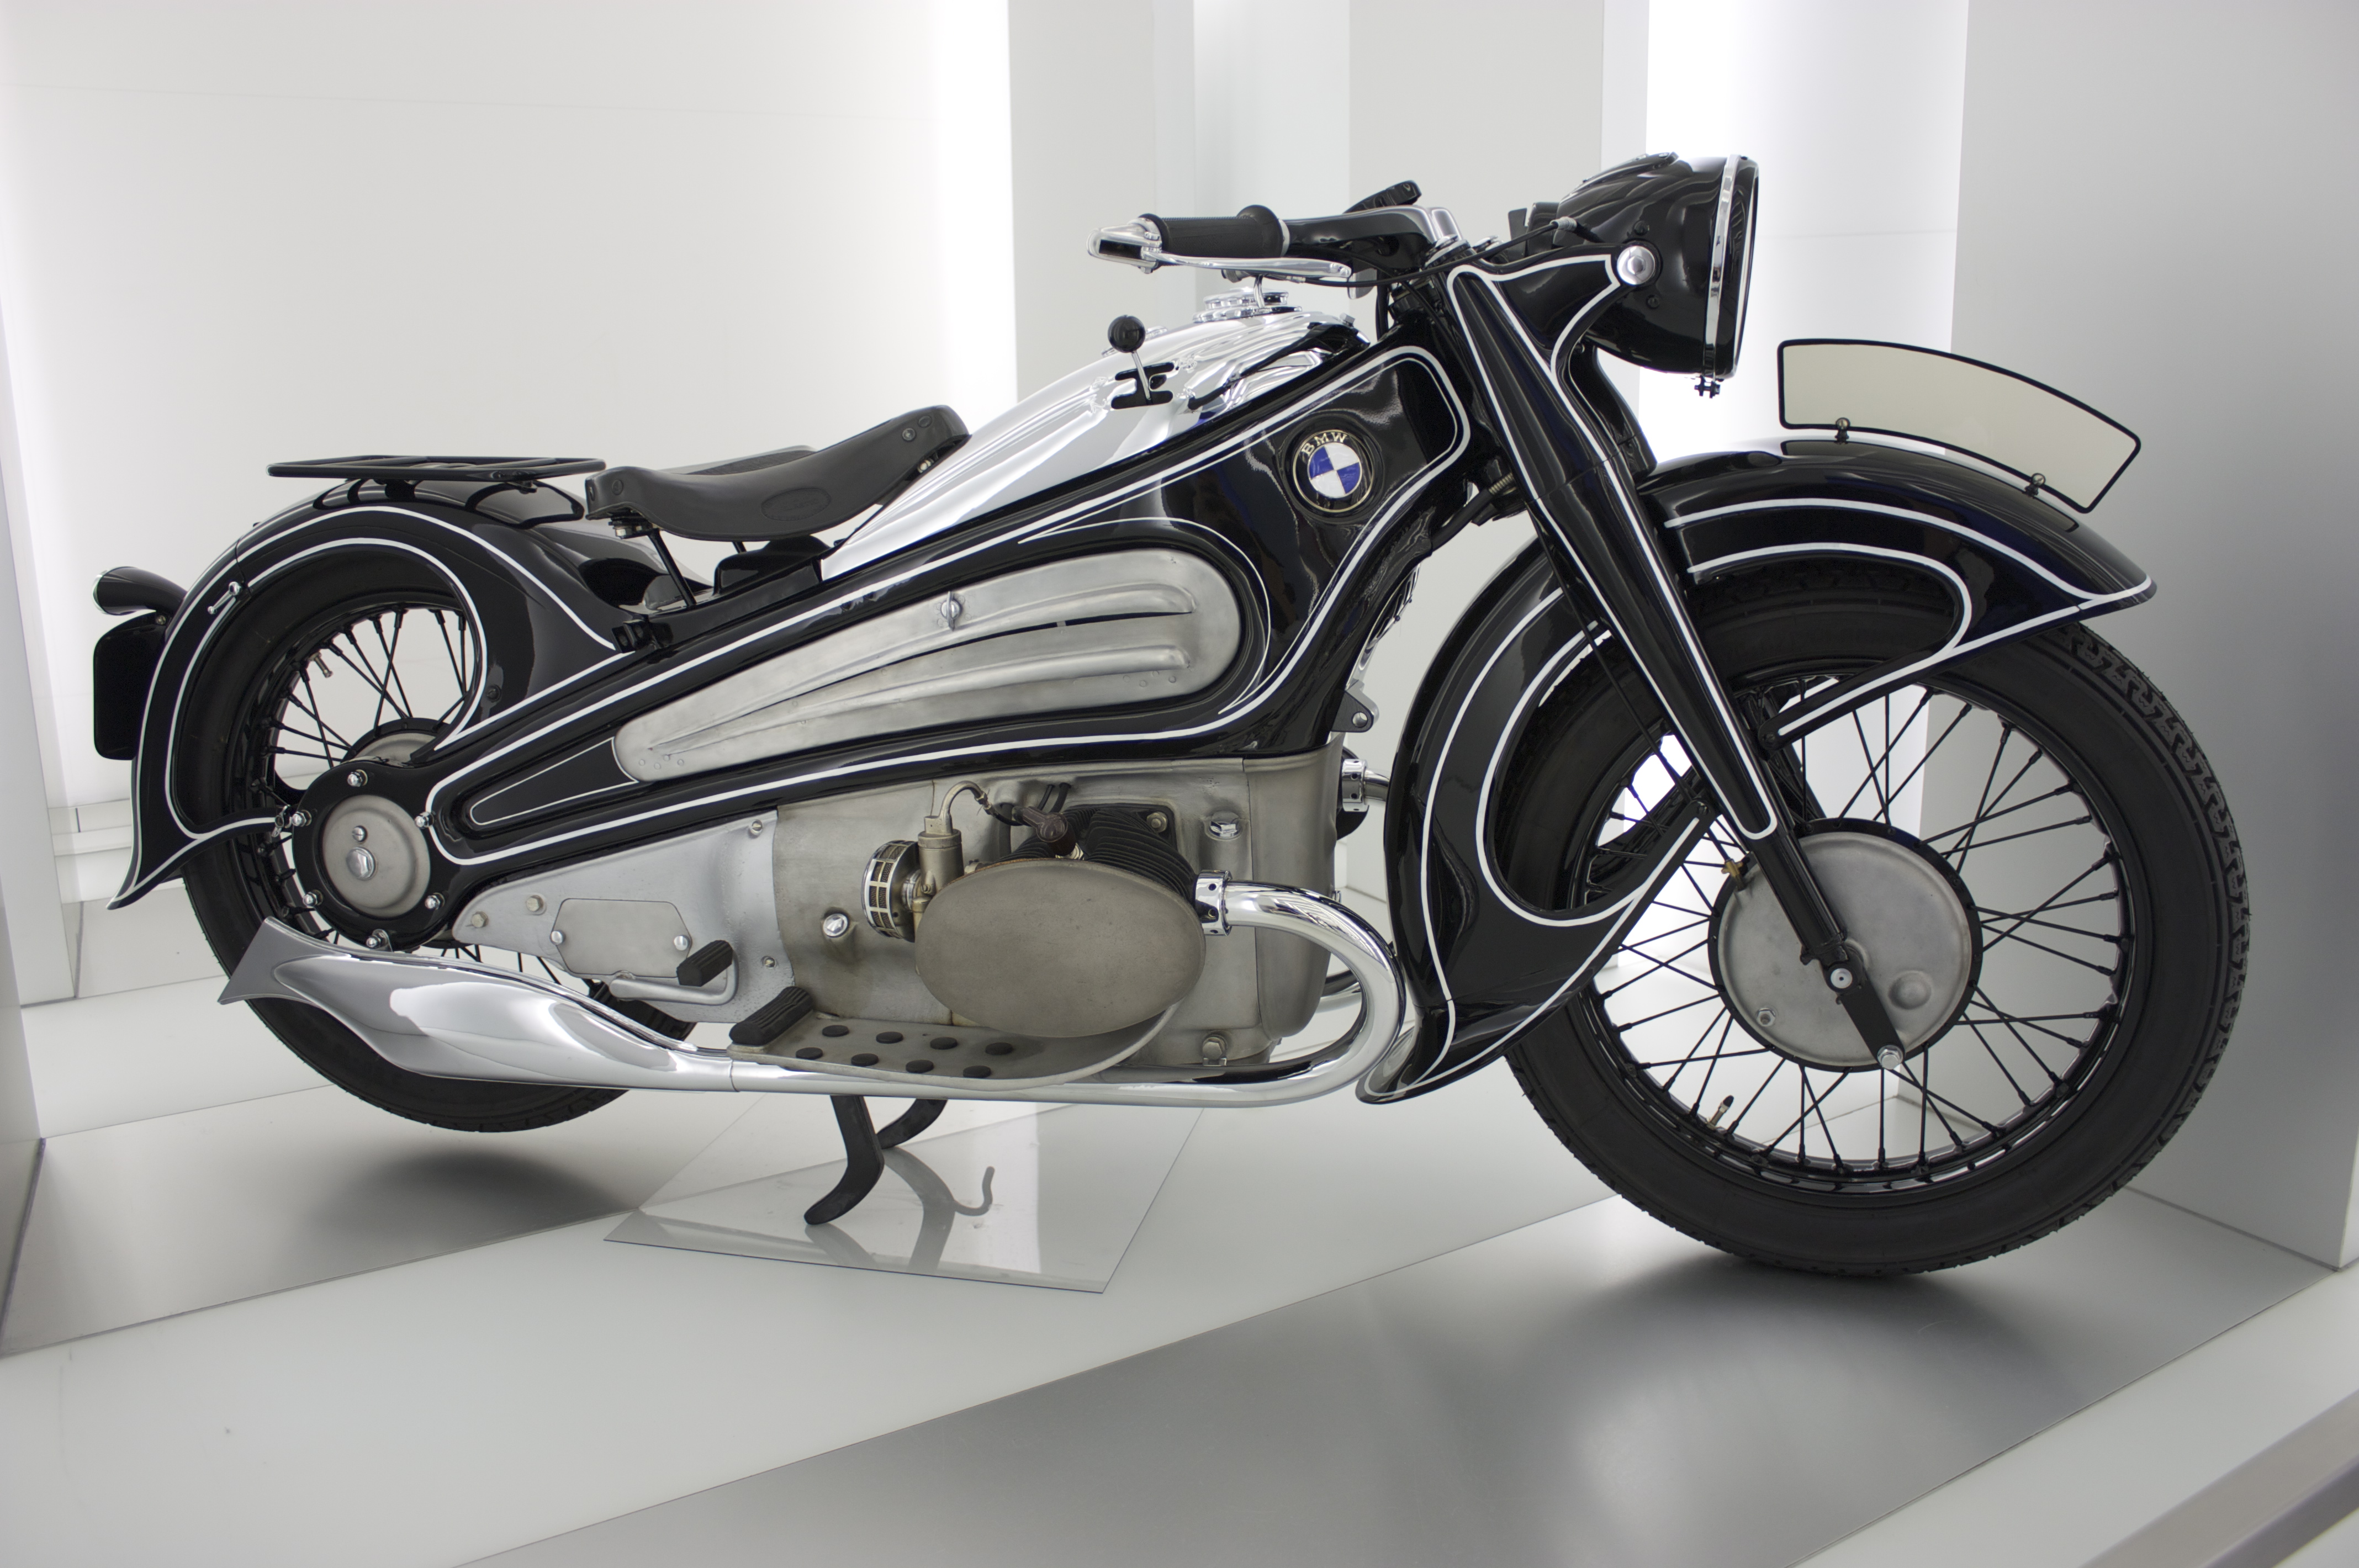 これが80年前のデザイン 時を超えて復元された幻のバイク Bmw R7 がかっこいい Lawrence Motorcycle X Cars A Your Life